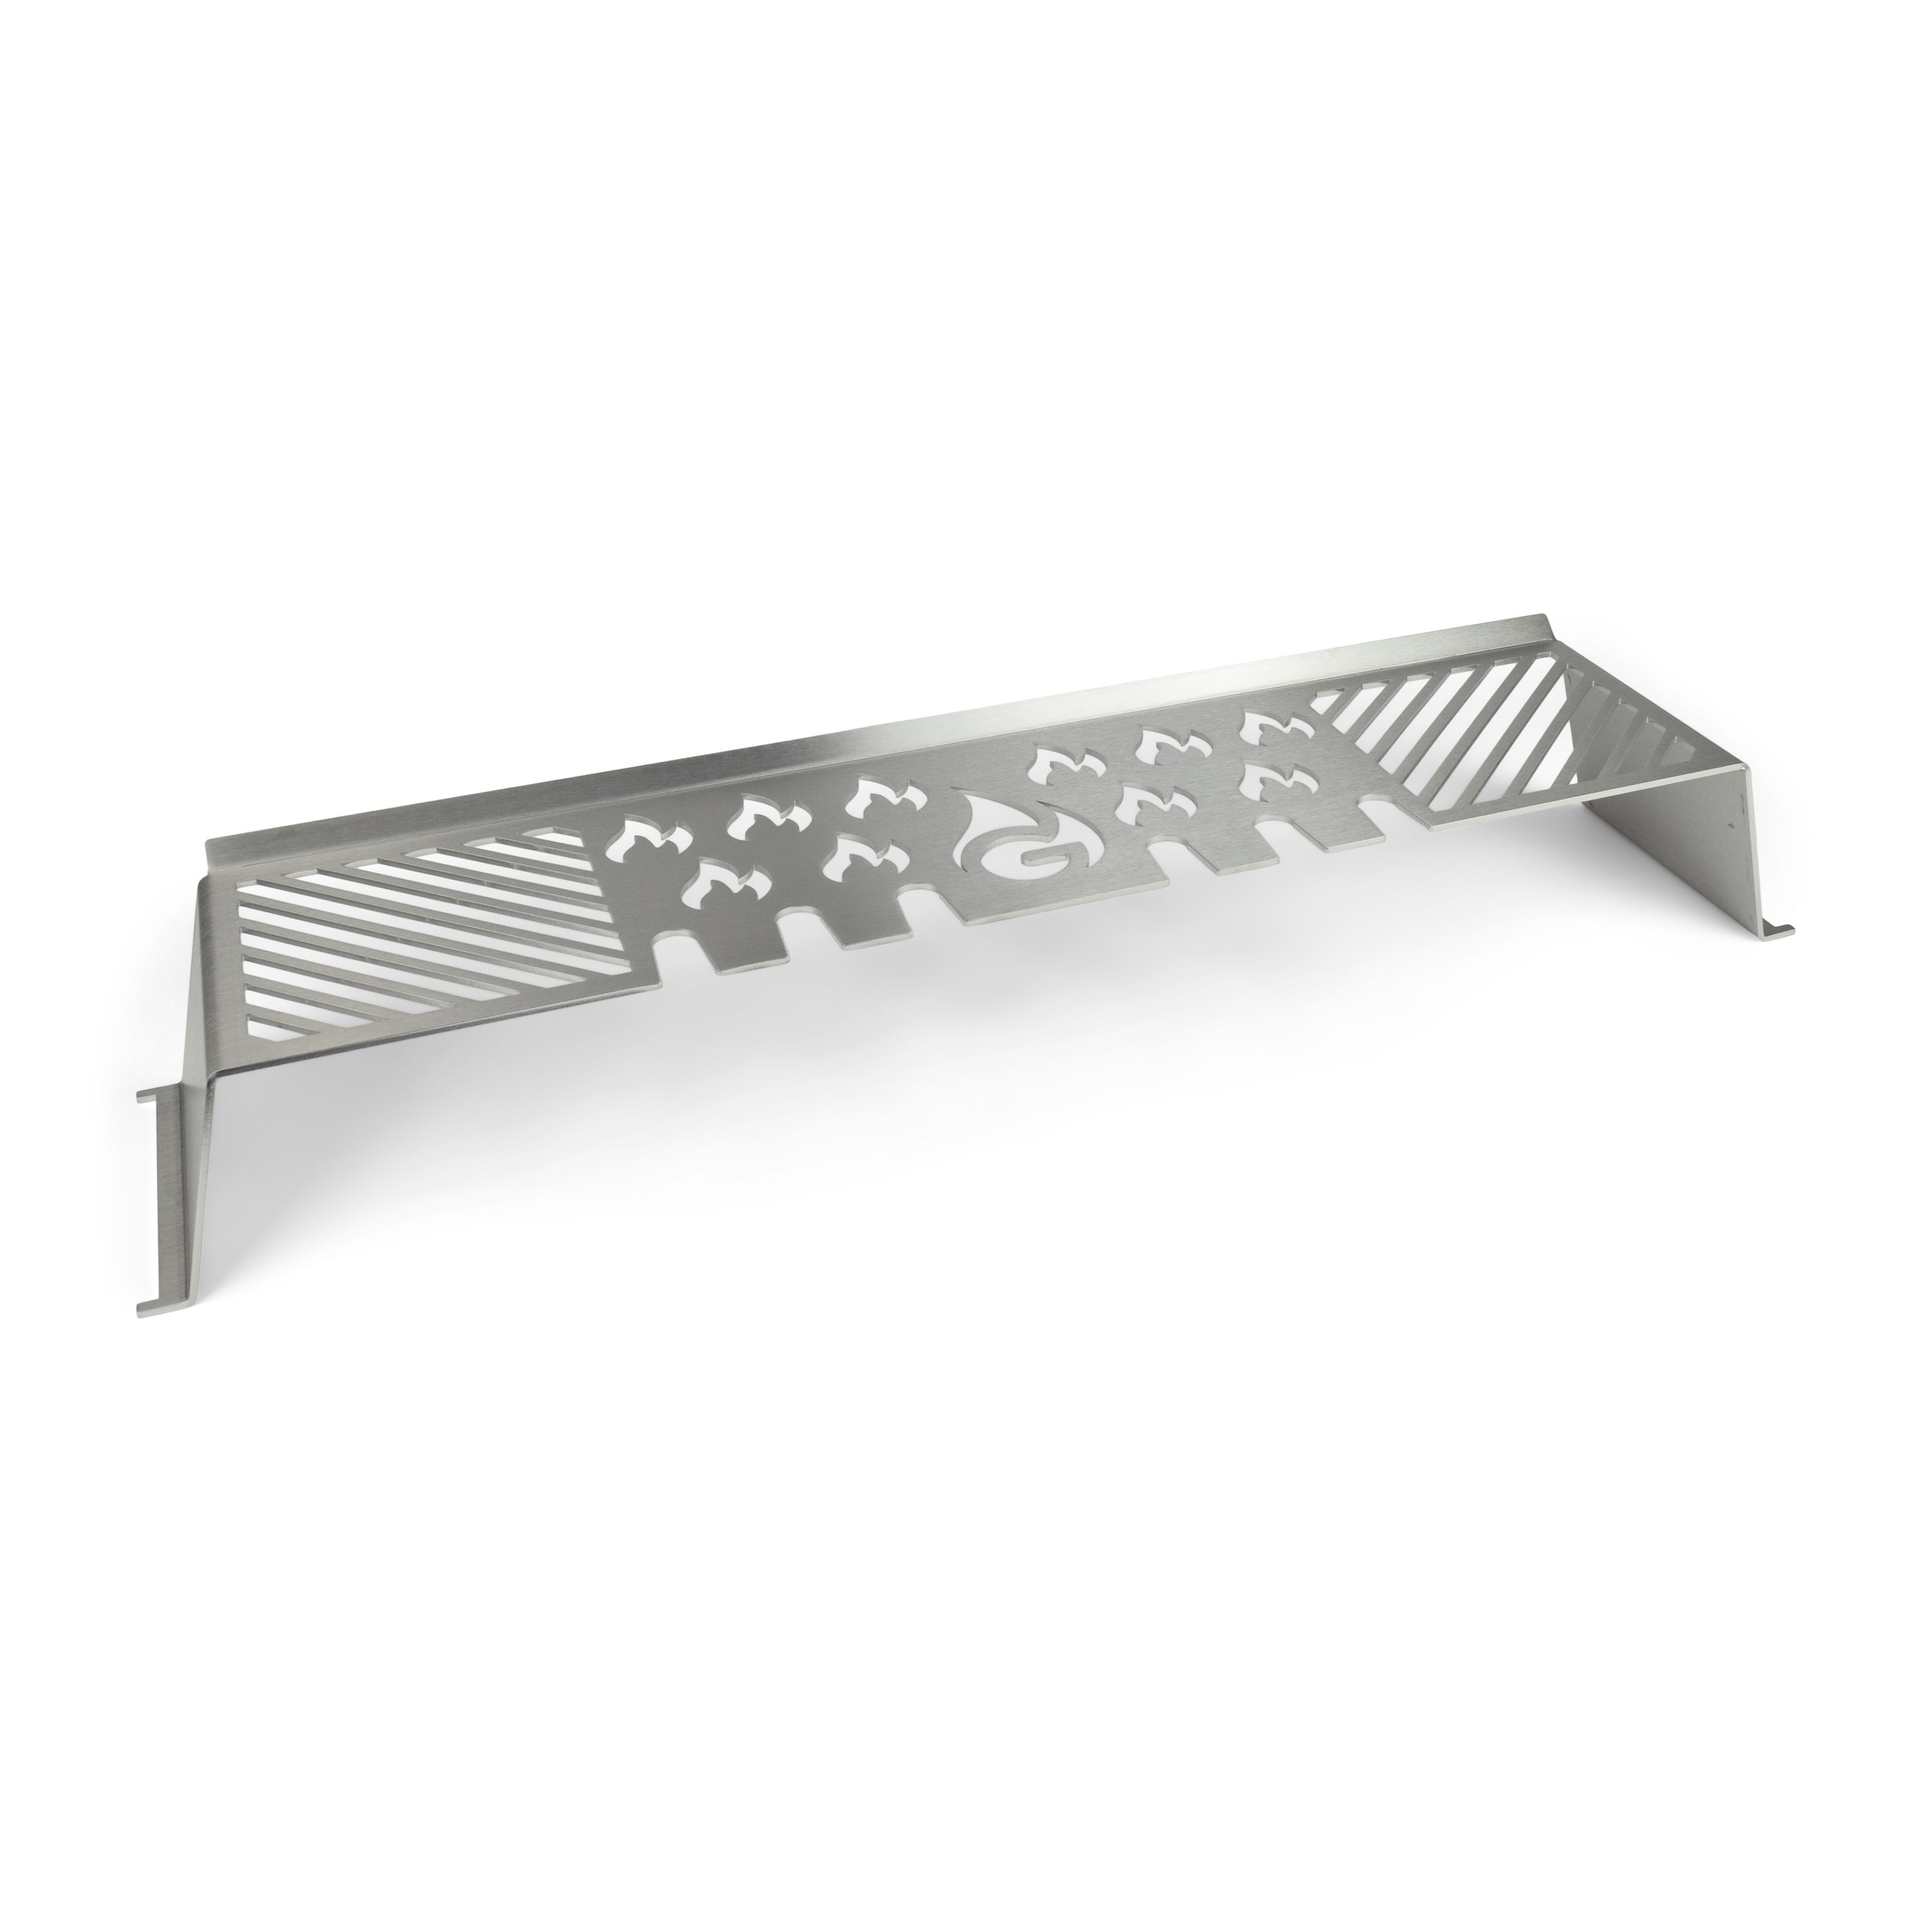 Stainless steel MultiStation for Weber